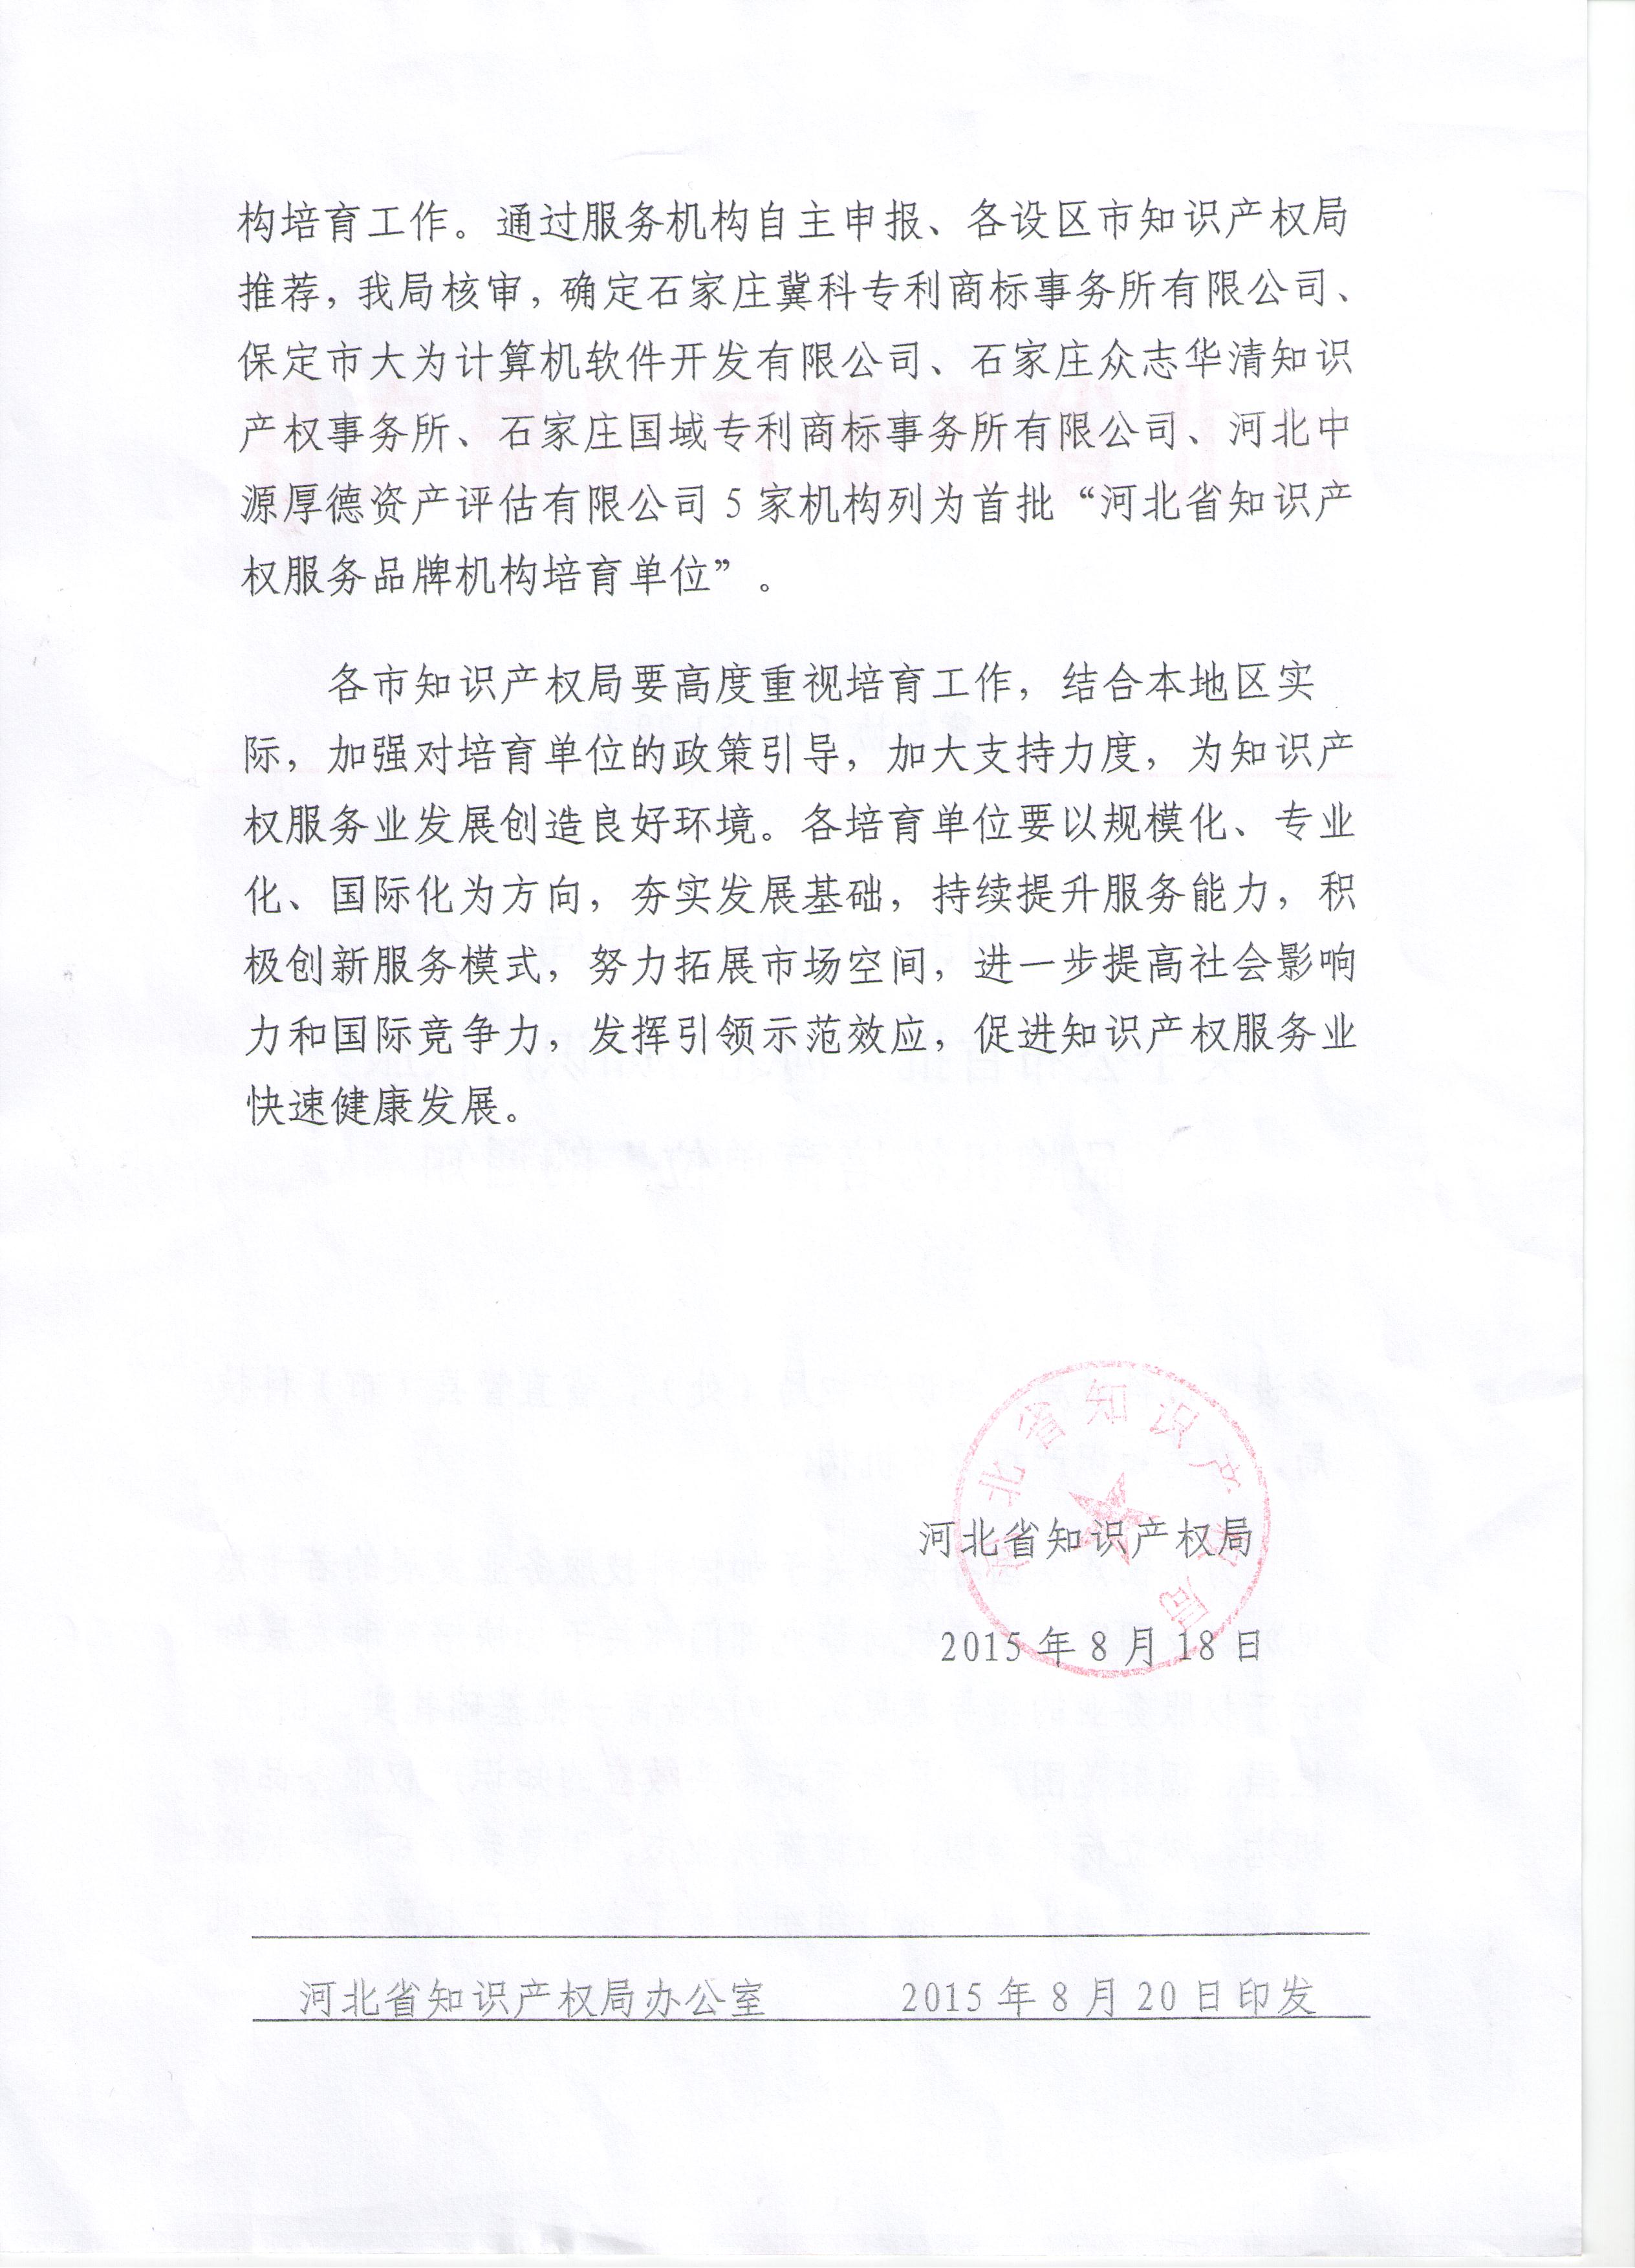 公司资质-10-3首批河北省知识产权服务品牌机构培育单位